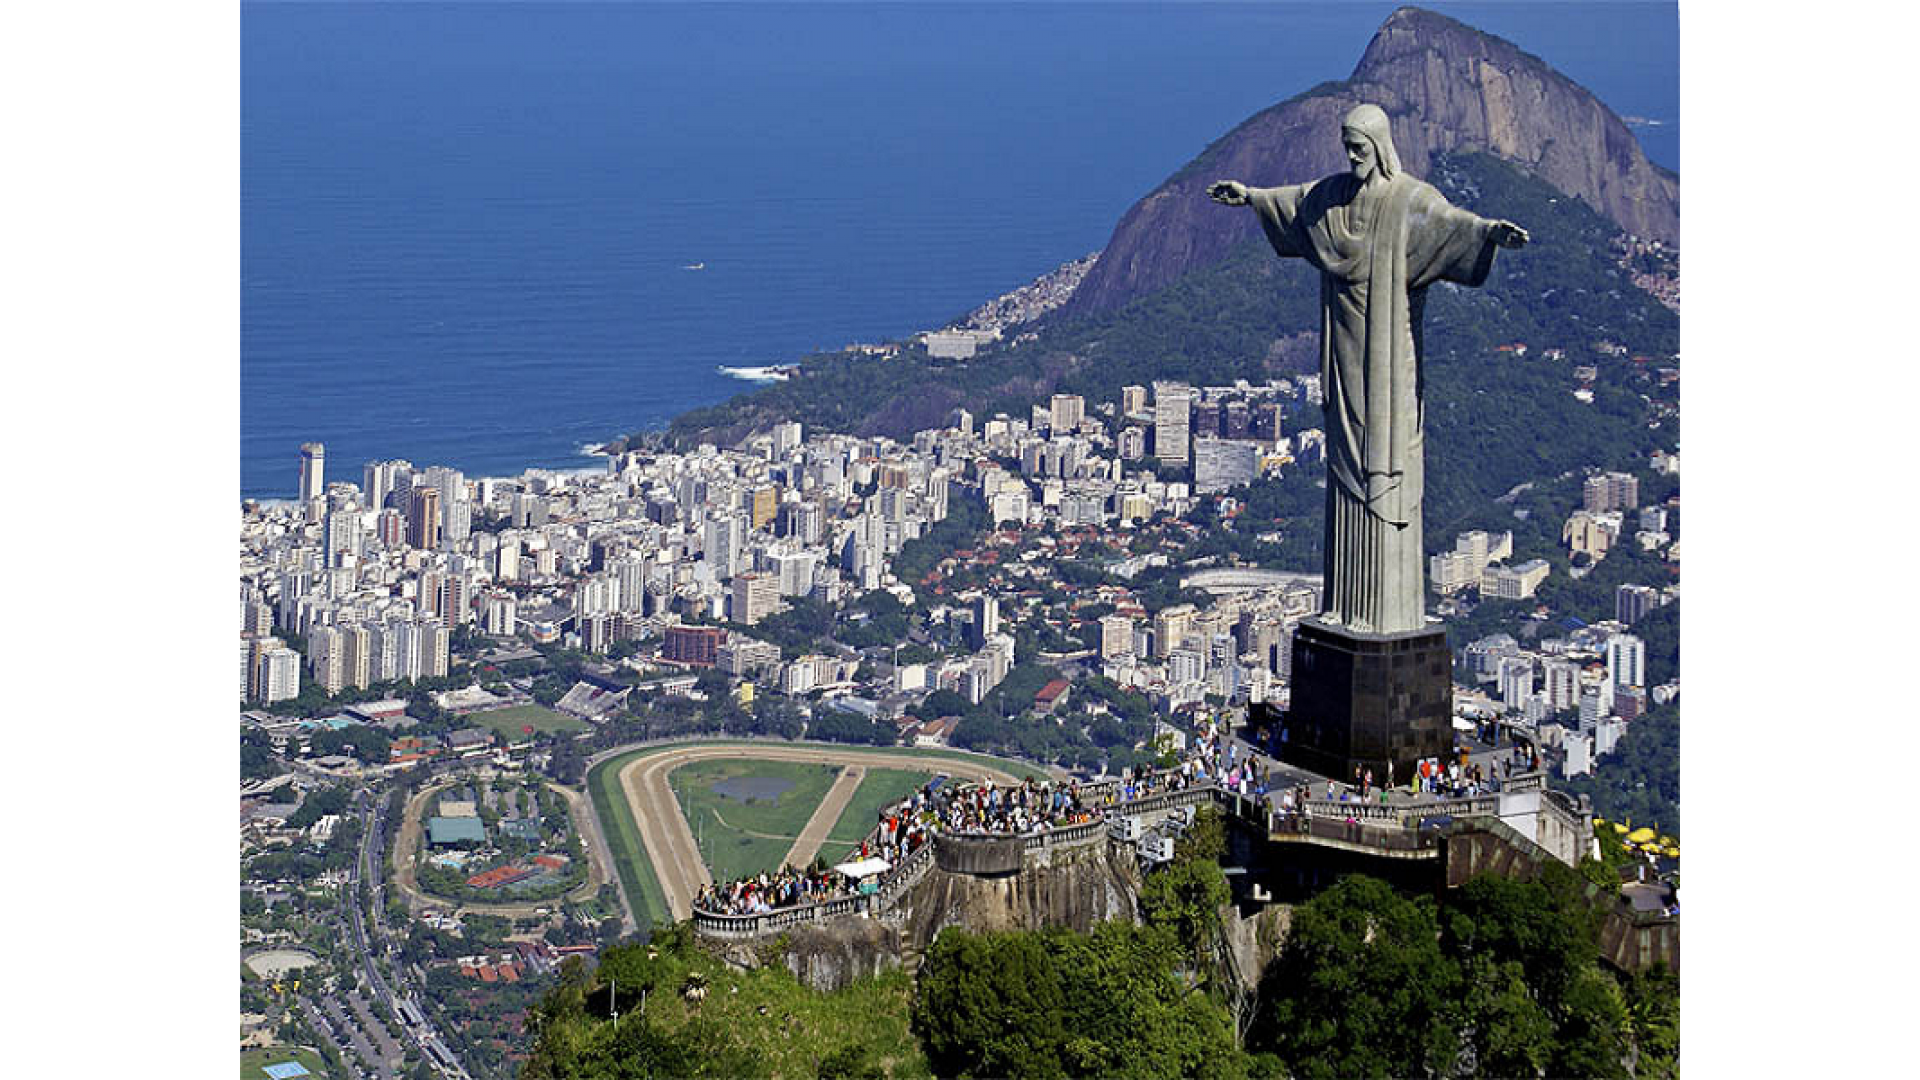 Как называется страна бразилия. Христос Искупитель Рио де Жанейро. Статуя Христа-Искупителя Бразилия. Бразилия Рио де Жанейро статуя Христа Спасителя. Статуя Иисуса в Рио де Жанейро.